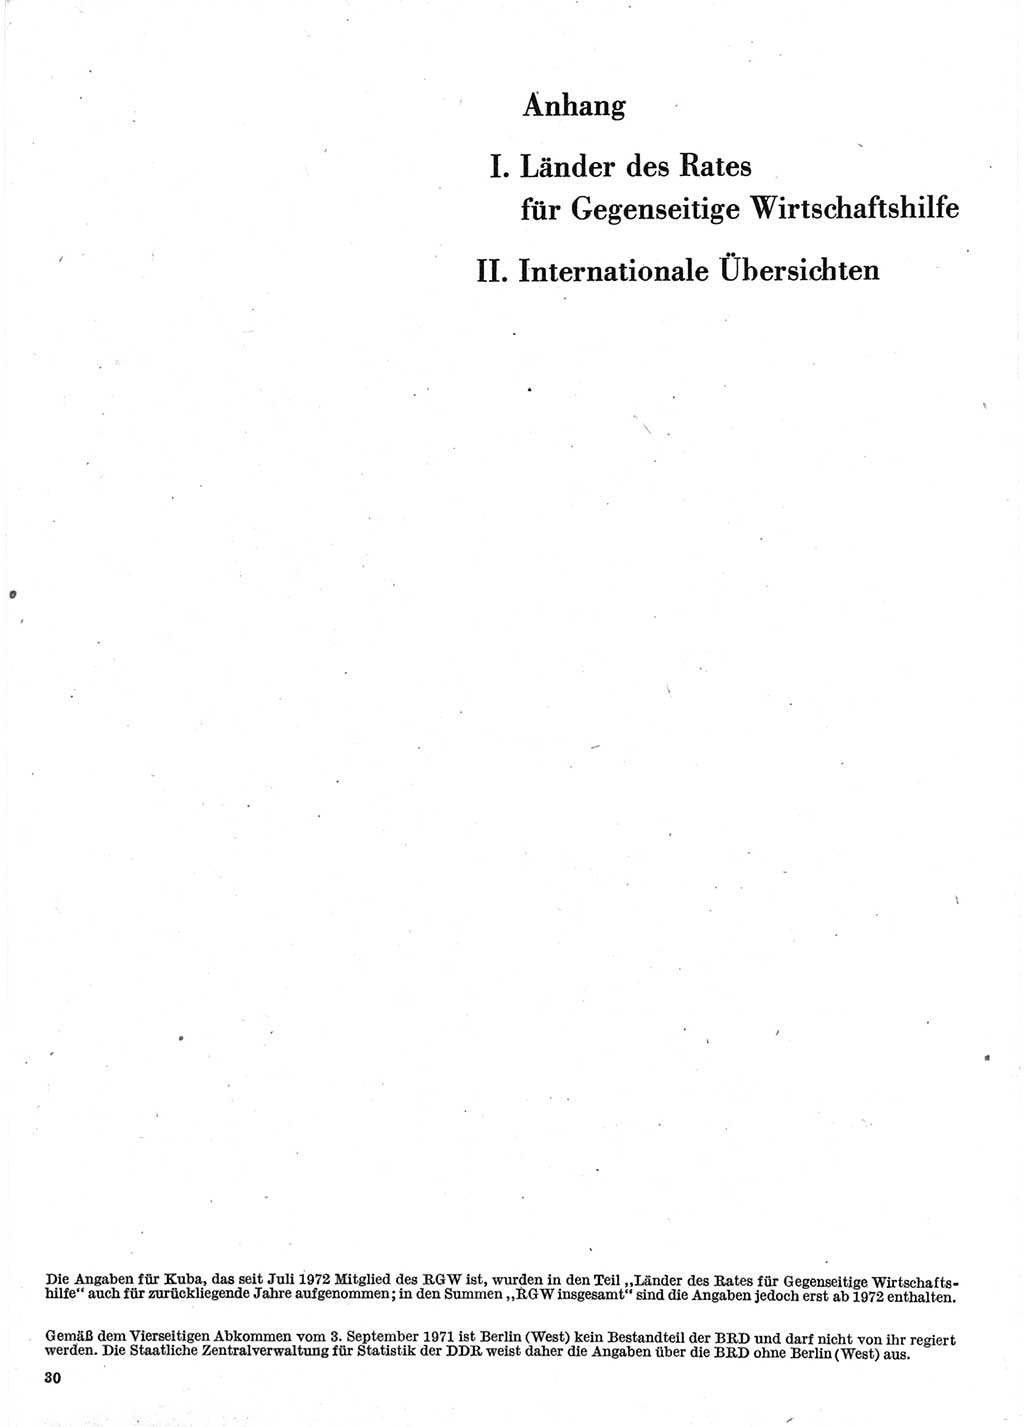 Statistisches Jahrbuch der Deutschen Demokratischen Republik (DDR) 1976, Seite 1 (Stat. Jb. DDR 1976, S. 1)